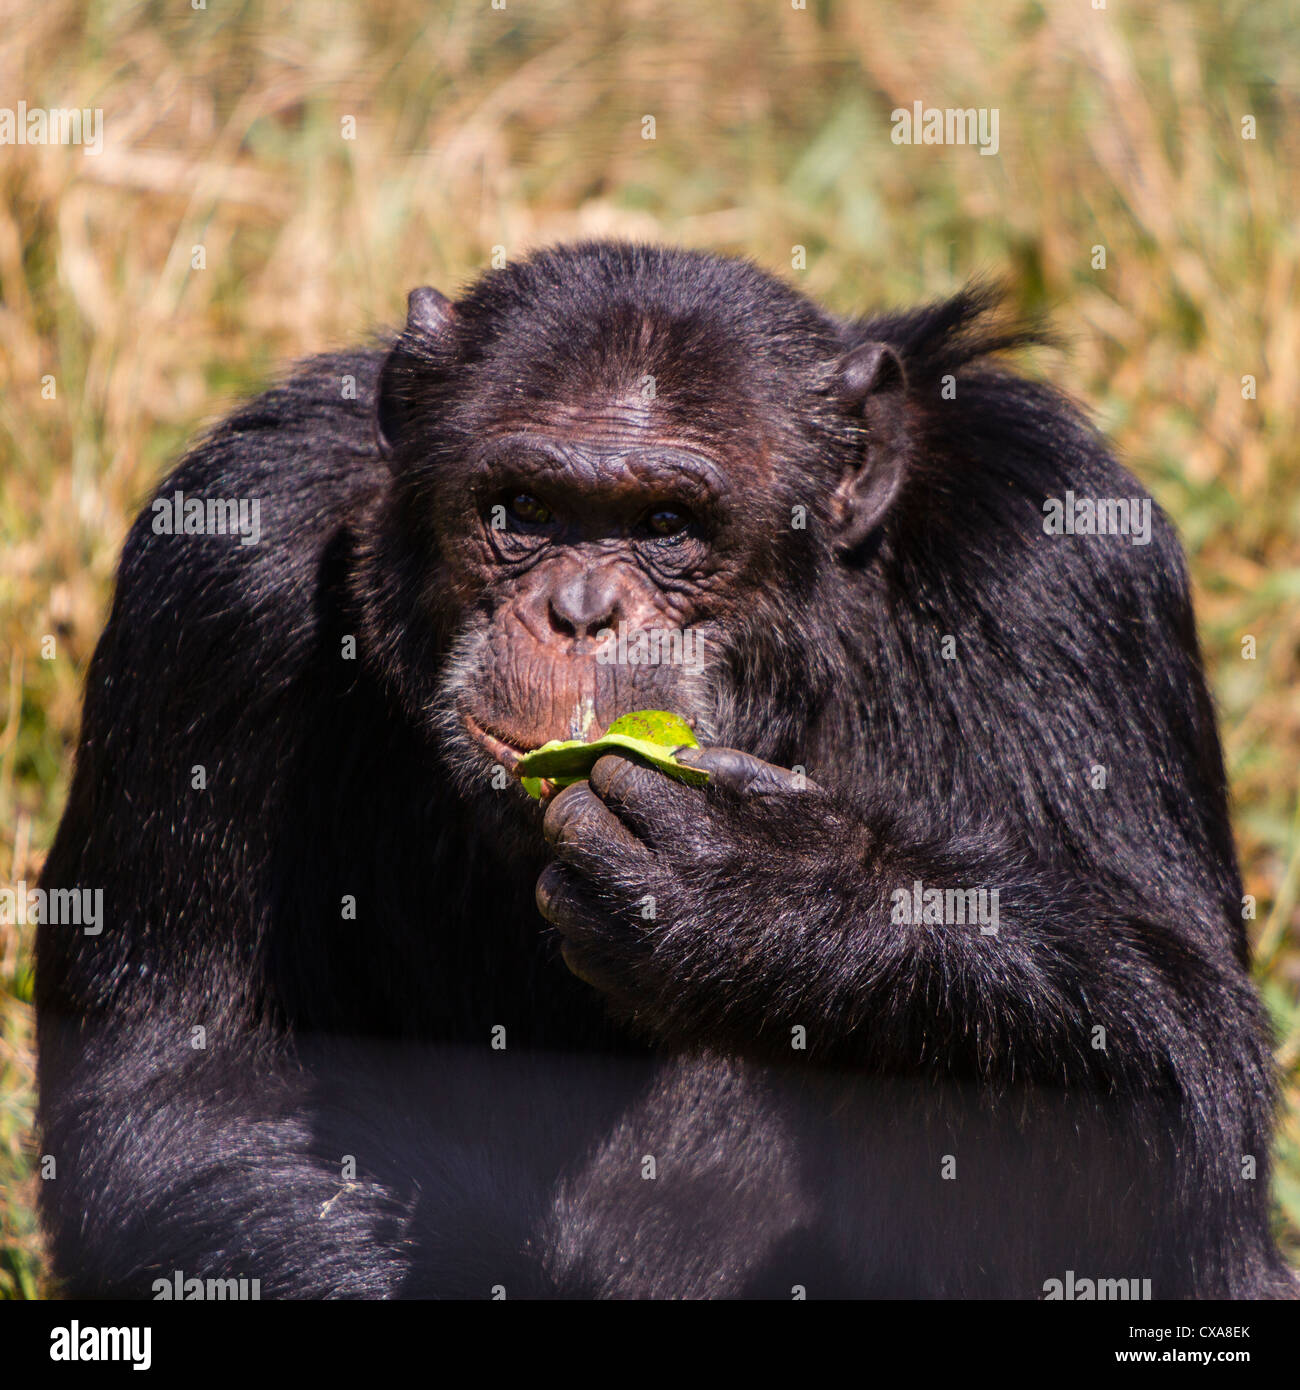 Chimpanzee, Ngoma Island Sanctuary, Uganda Stock Photo